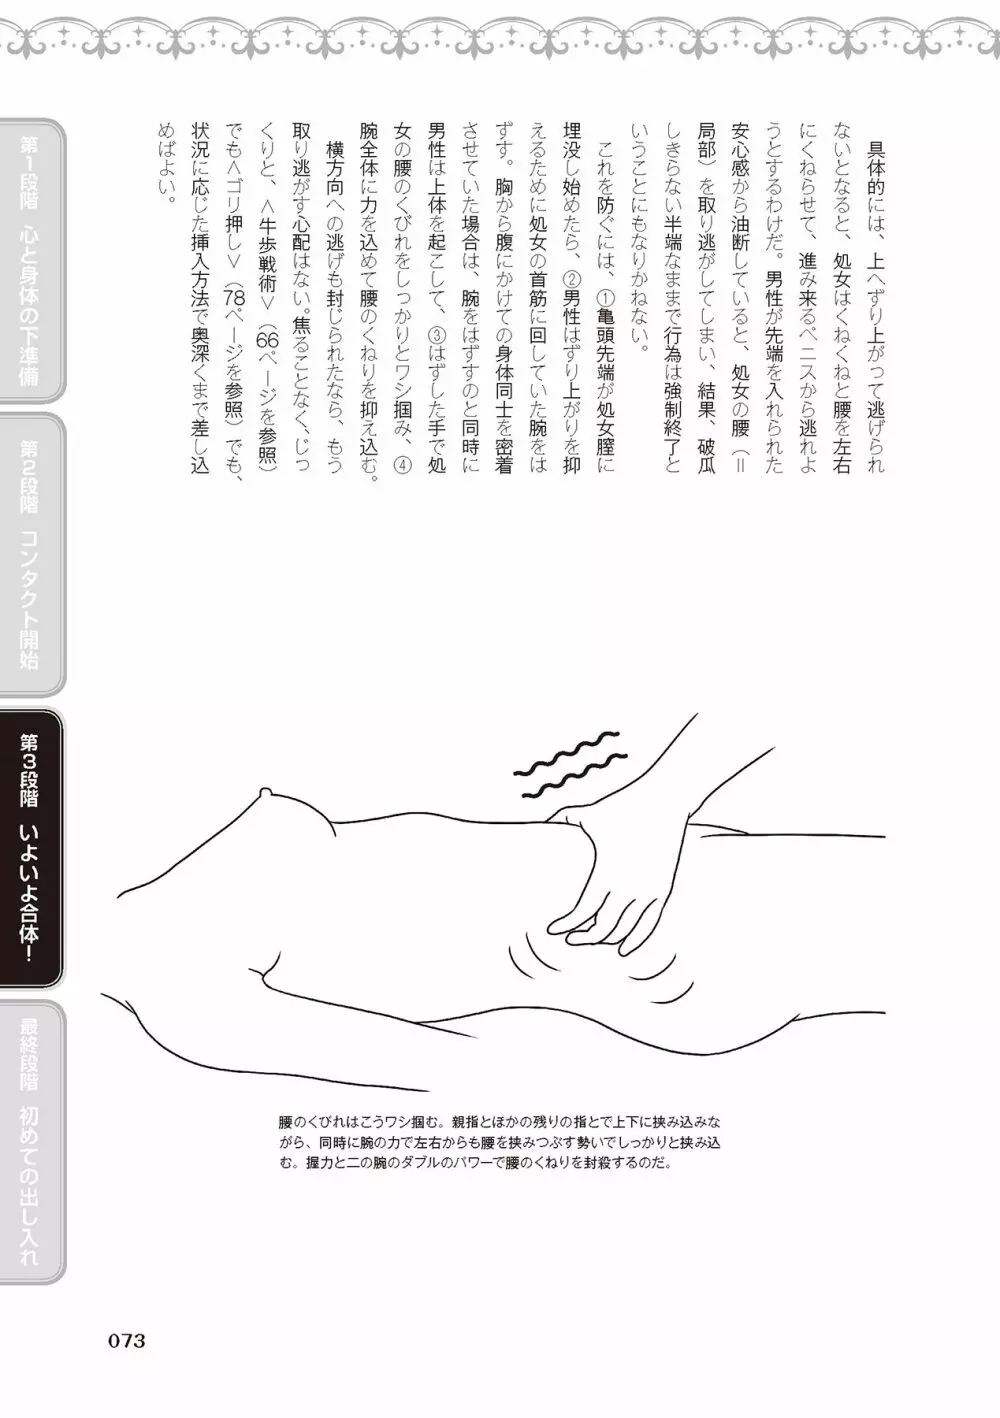 処女喪失・ロストヴァージンSEX完全マニュアル イラスト版……初エッチ 75ページ